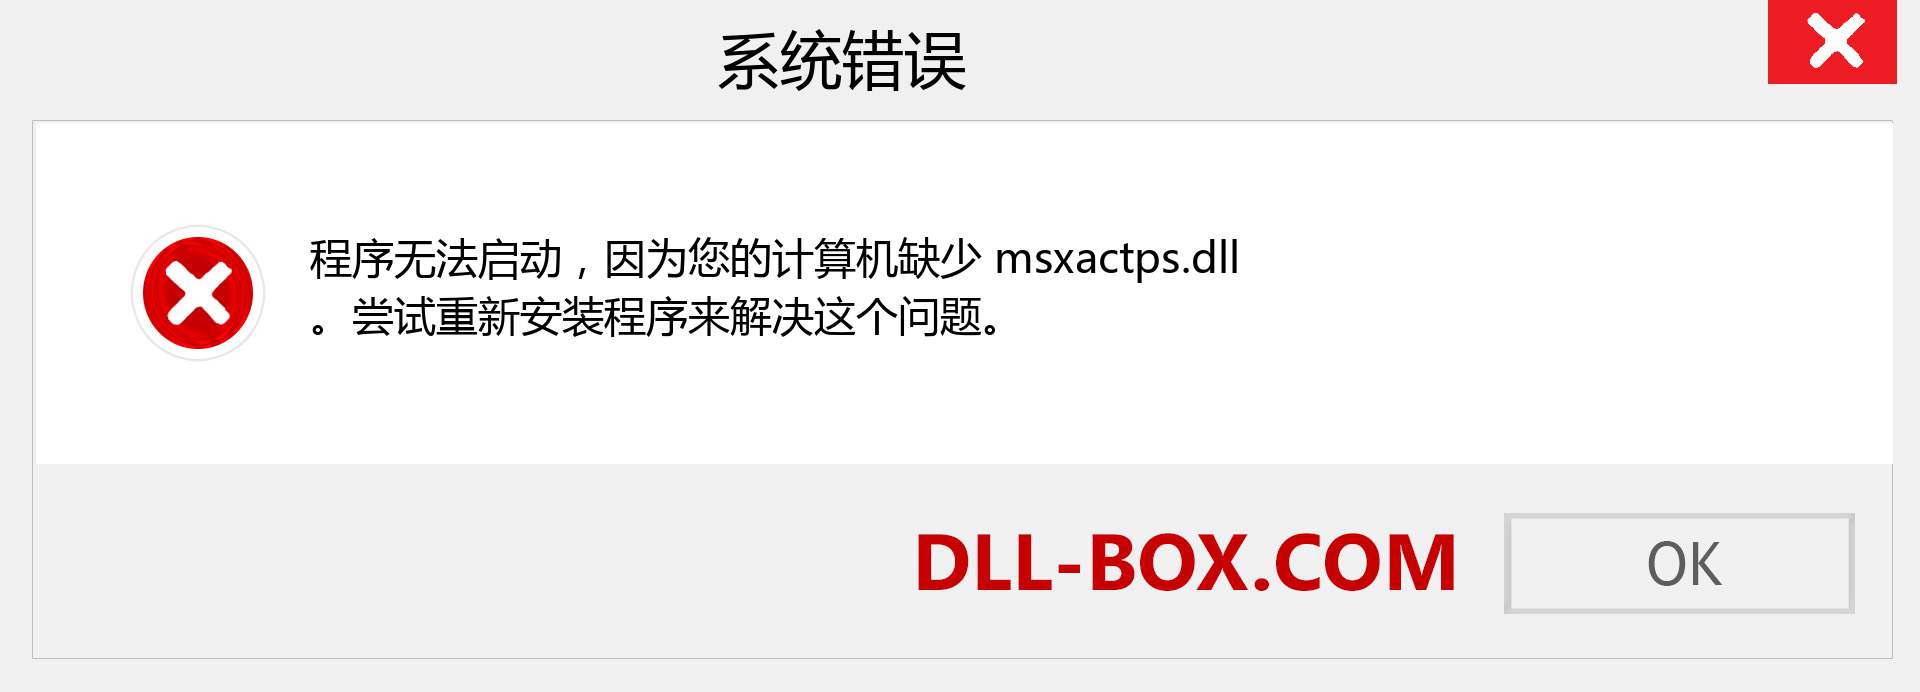 msxactps.dll 文件丢失？。 适用于 Windows 7、8、10 的下载 - 修复 Windows、照片、图像上的 msxactps dll 丢失错误